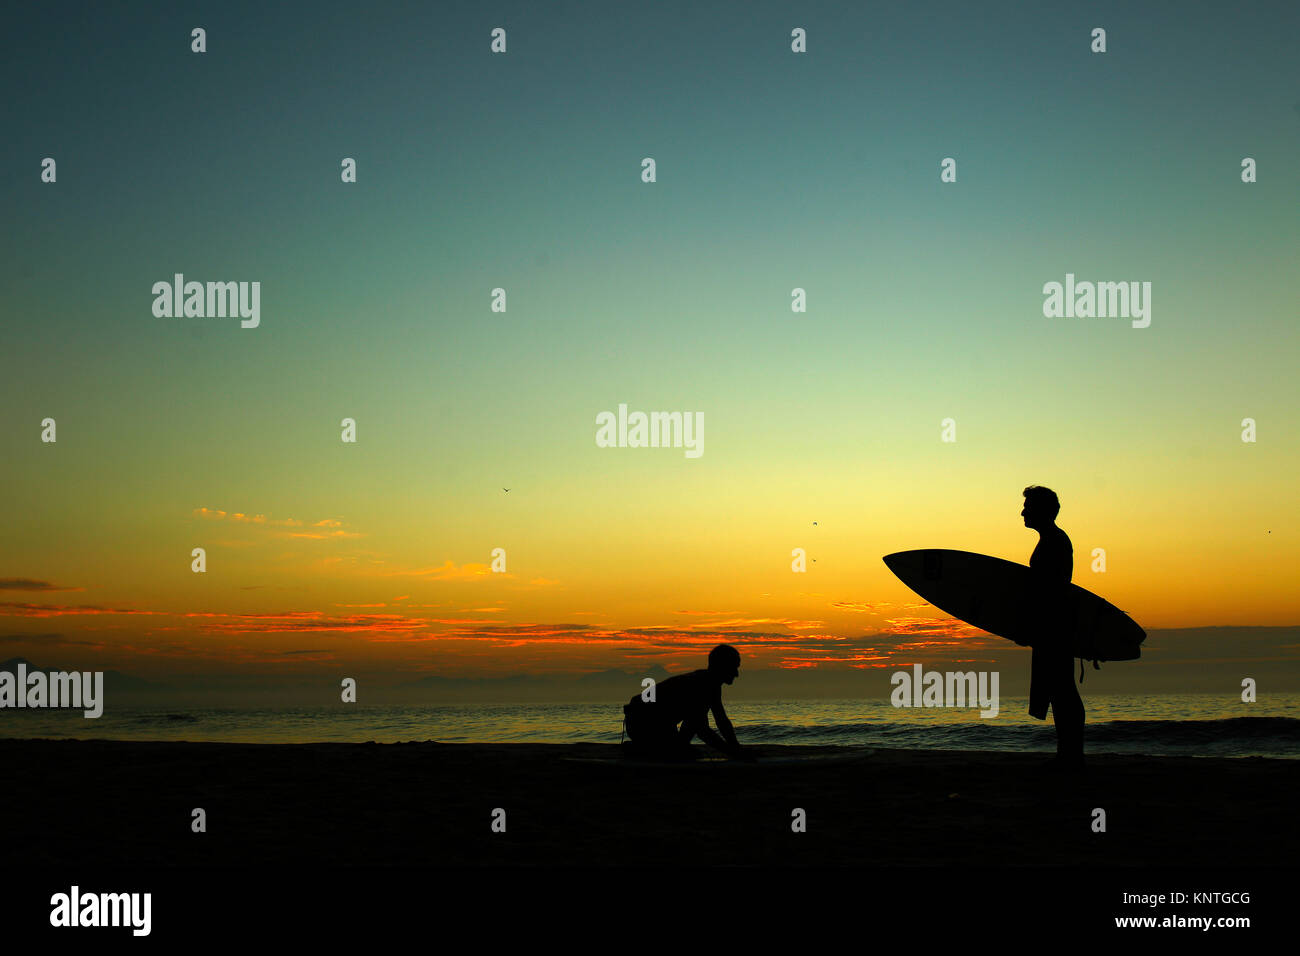 Surfers early morning at Arpoador beach, Rio de Janeiro, Brazil Stock Photo